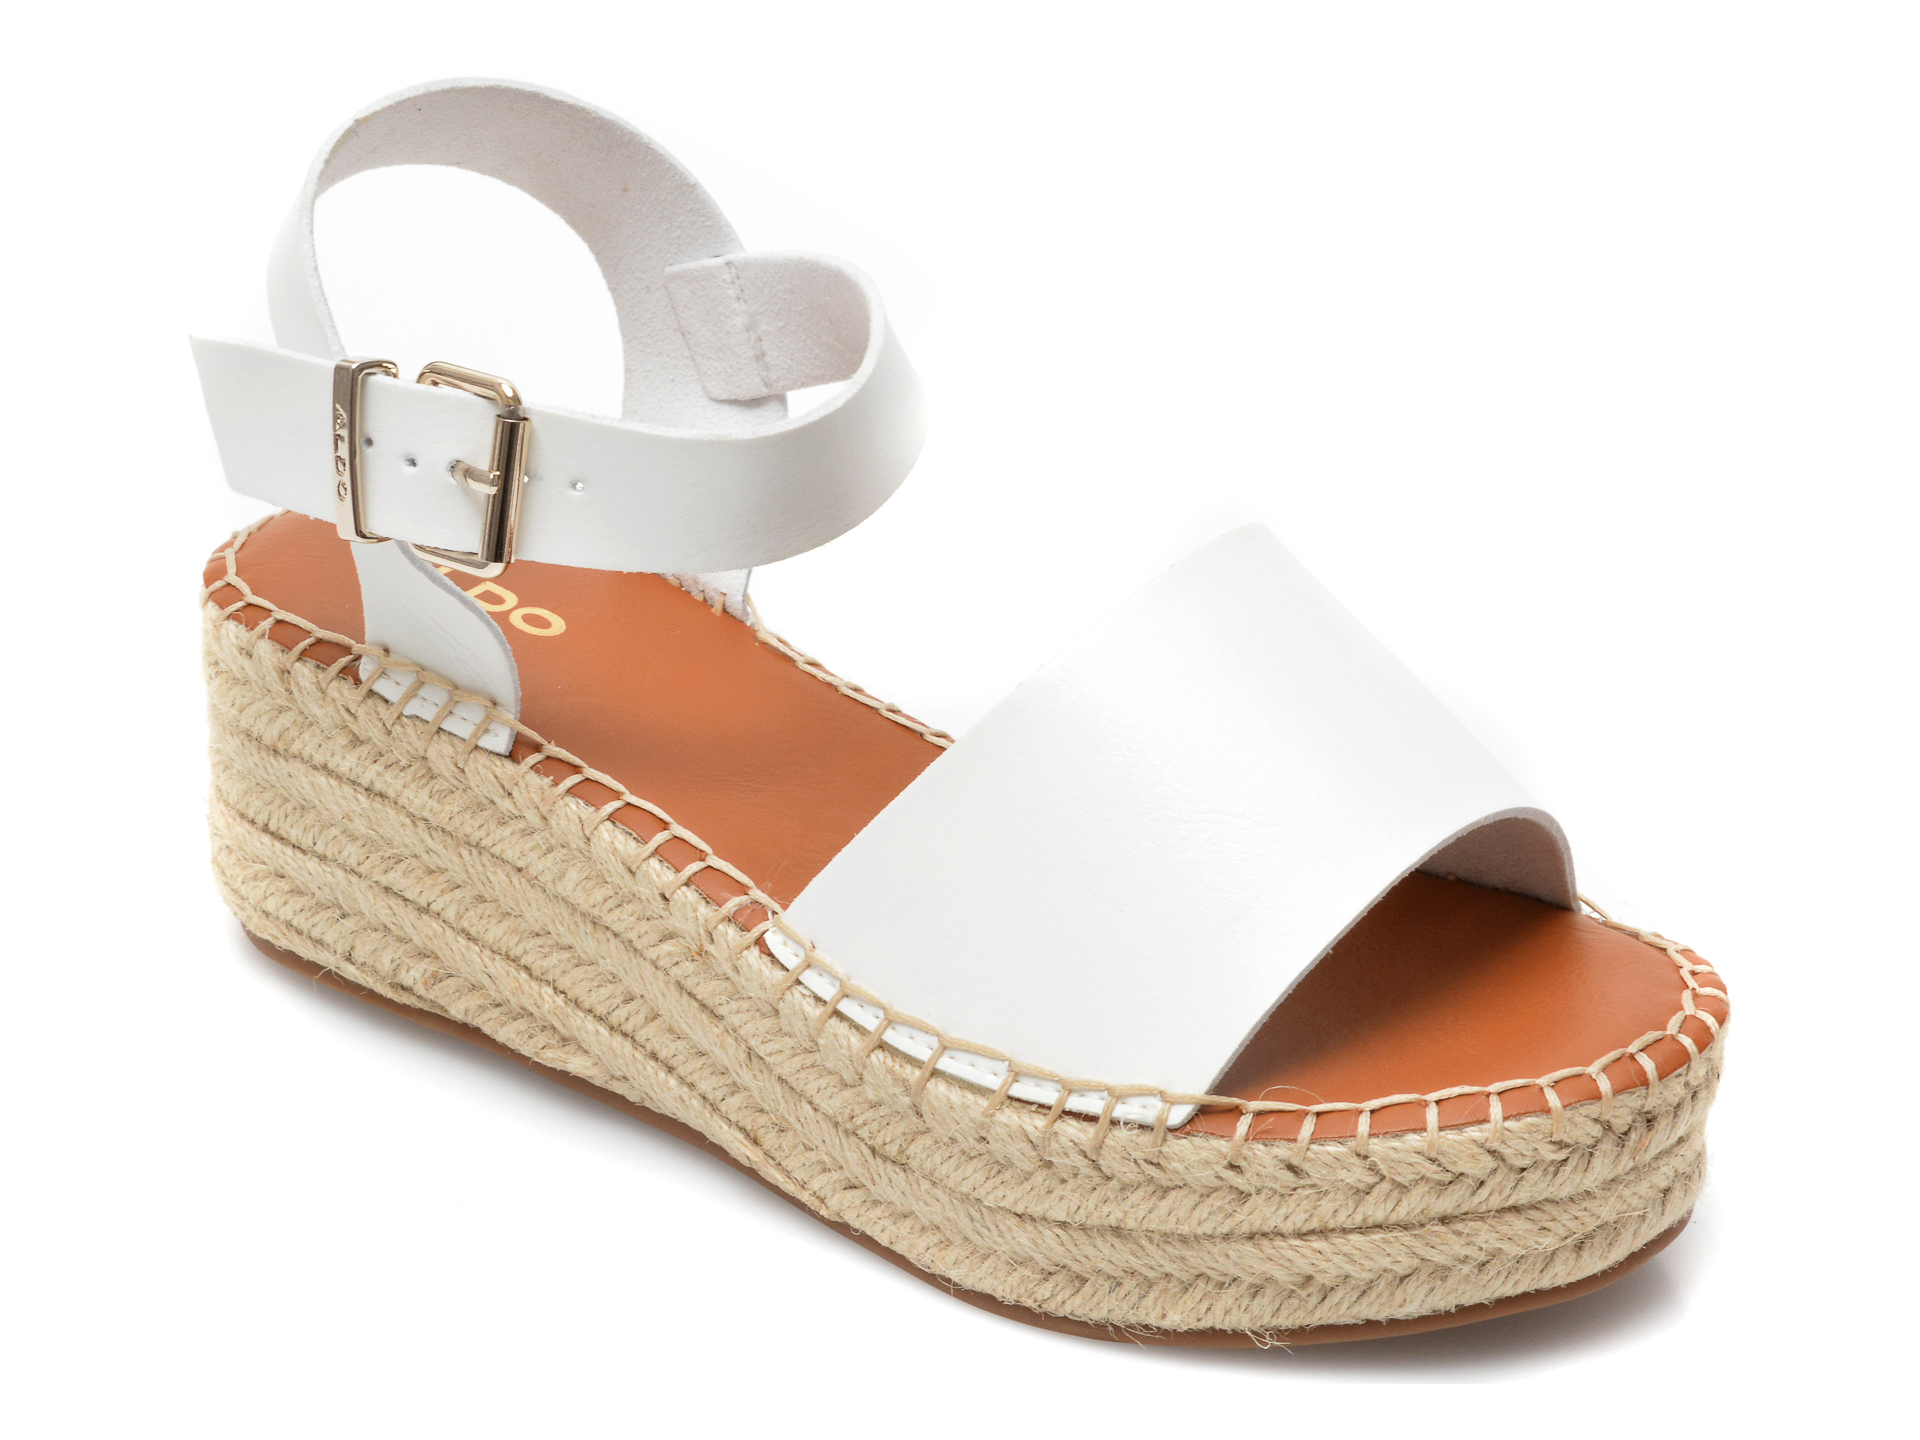 Sandale ALDO albe, Abearith100, din piele ecologica Aldo